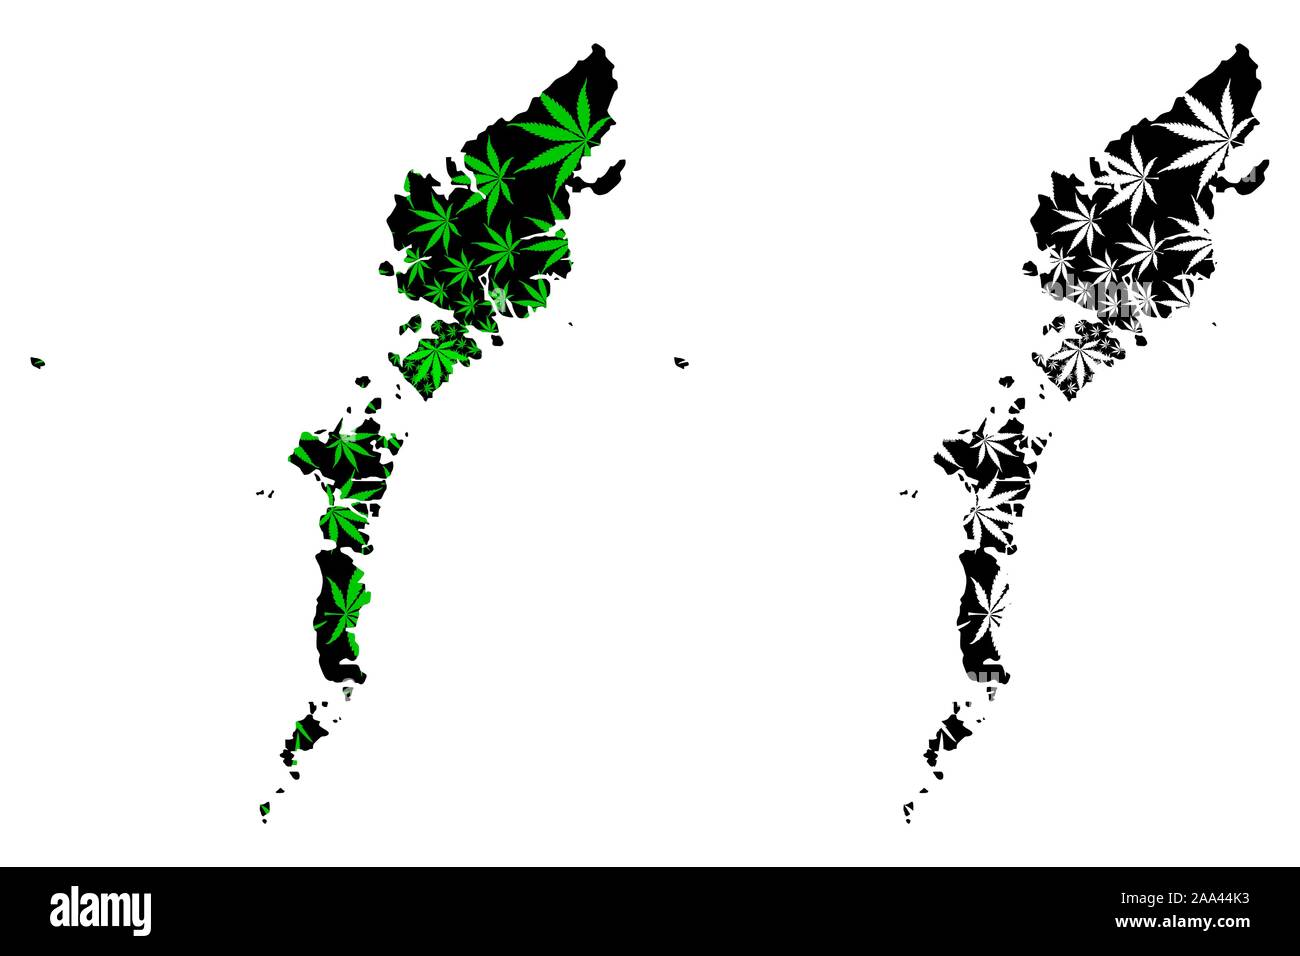 Comhairle Nan Eilean Siar (Vereinigtes Königreich) Karte cannabis Blatt grün und schwarz ausgelegt ist, Na h-eileanan Siar (Äußeren Hebriden und die Isle of Lewis) Karte ma Stock Vektor